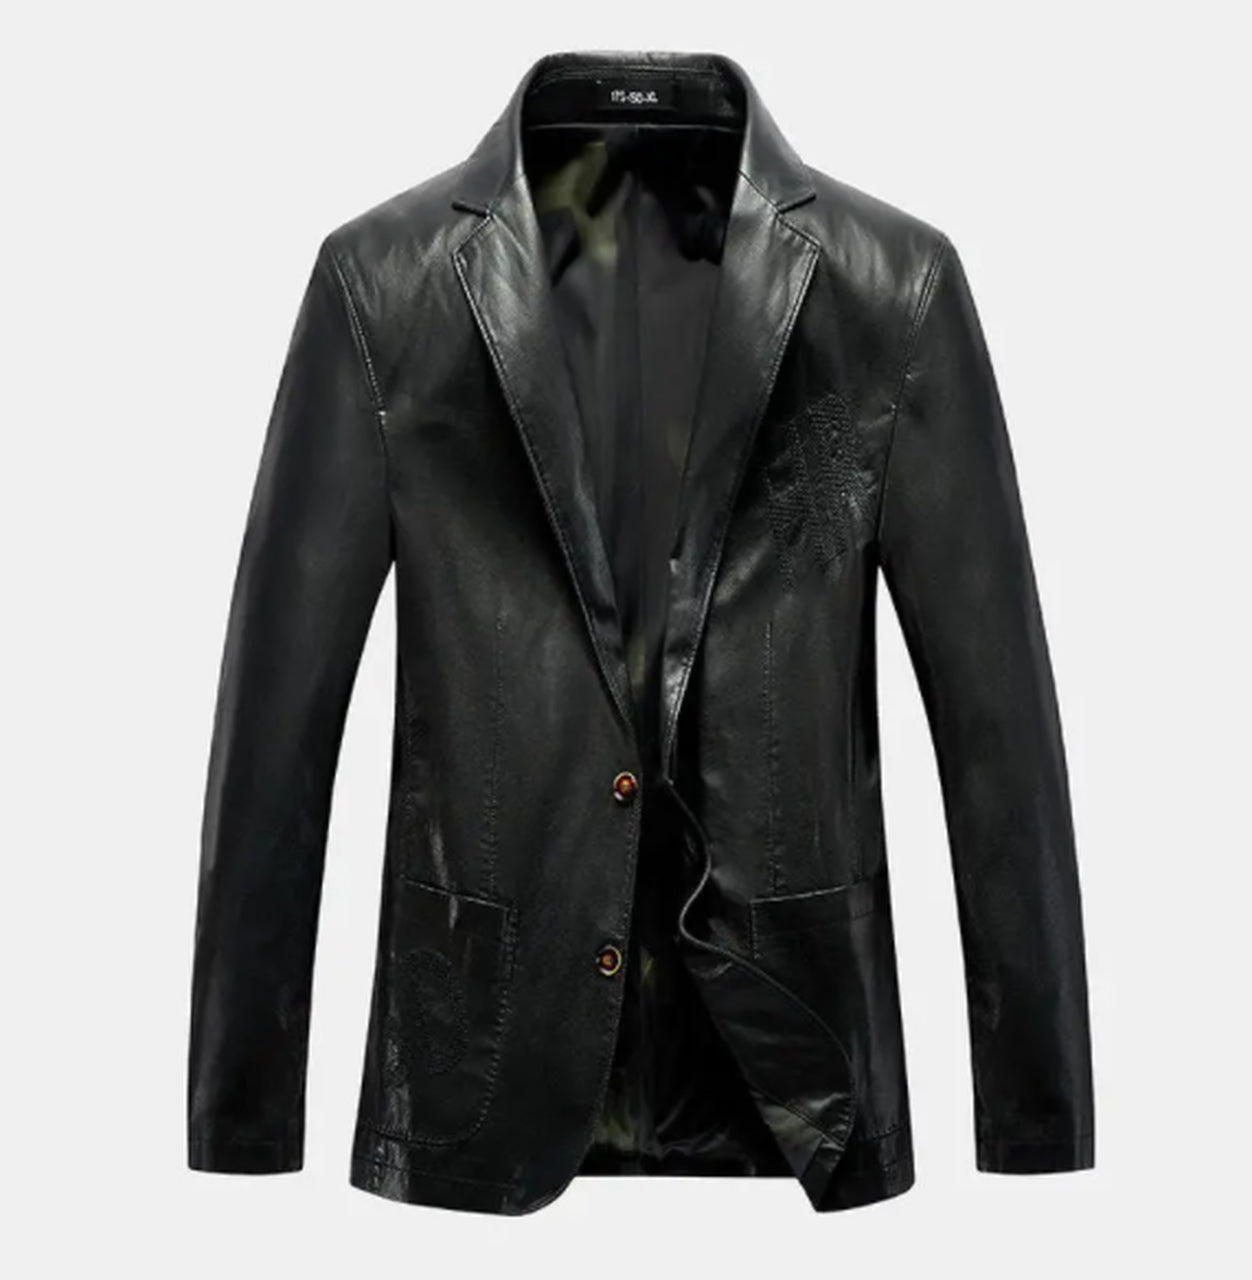 Geniune Leather Jacket Inside Pocket Caual Waring For Men